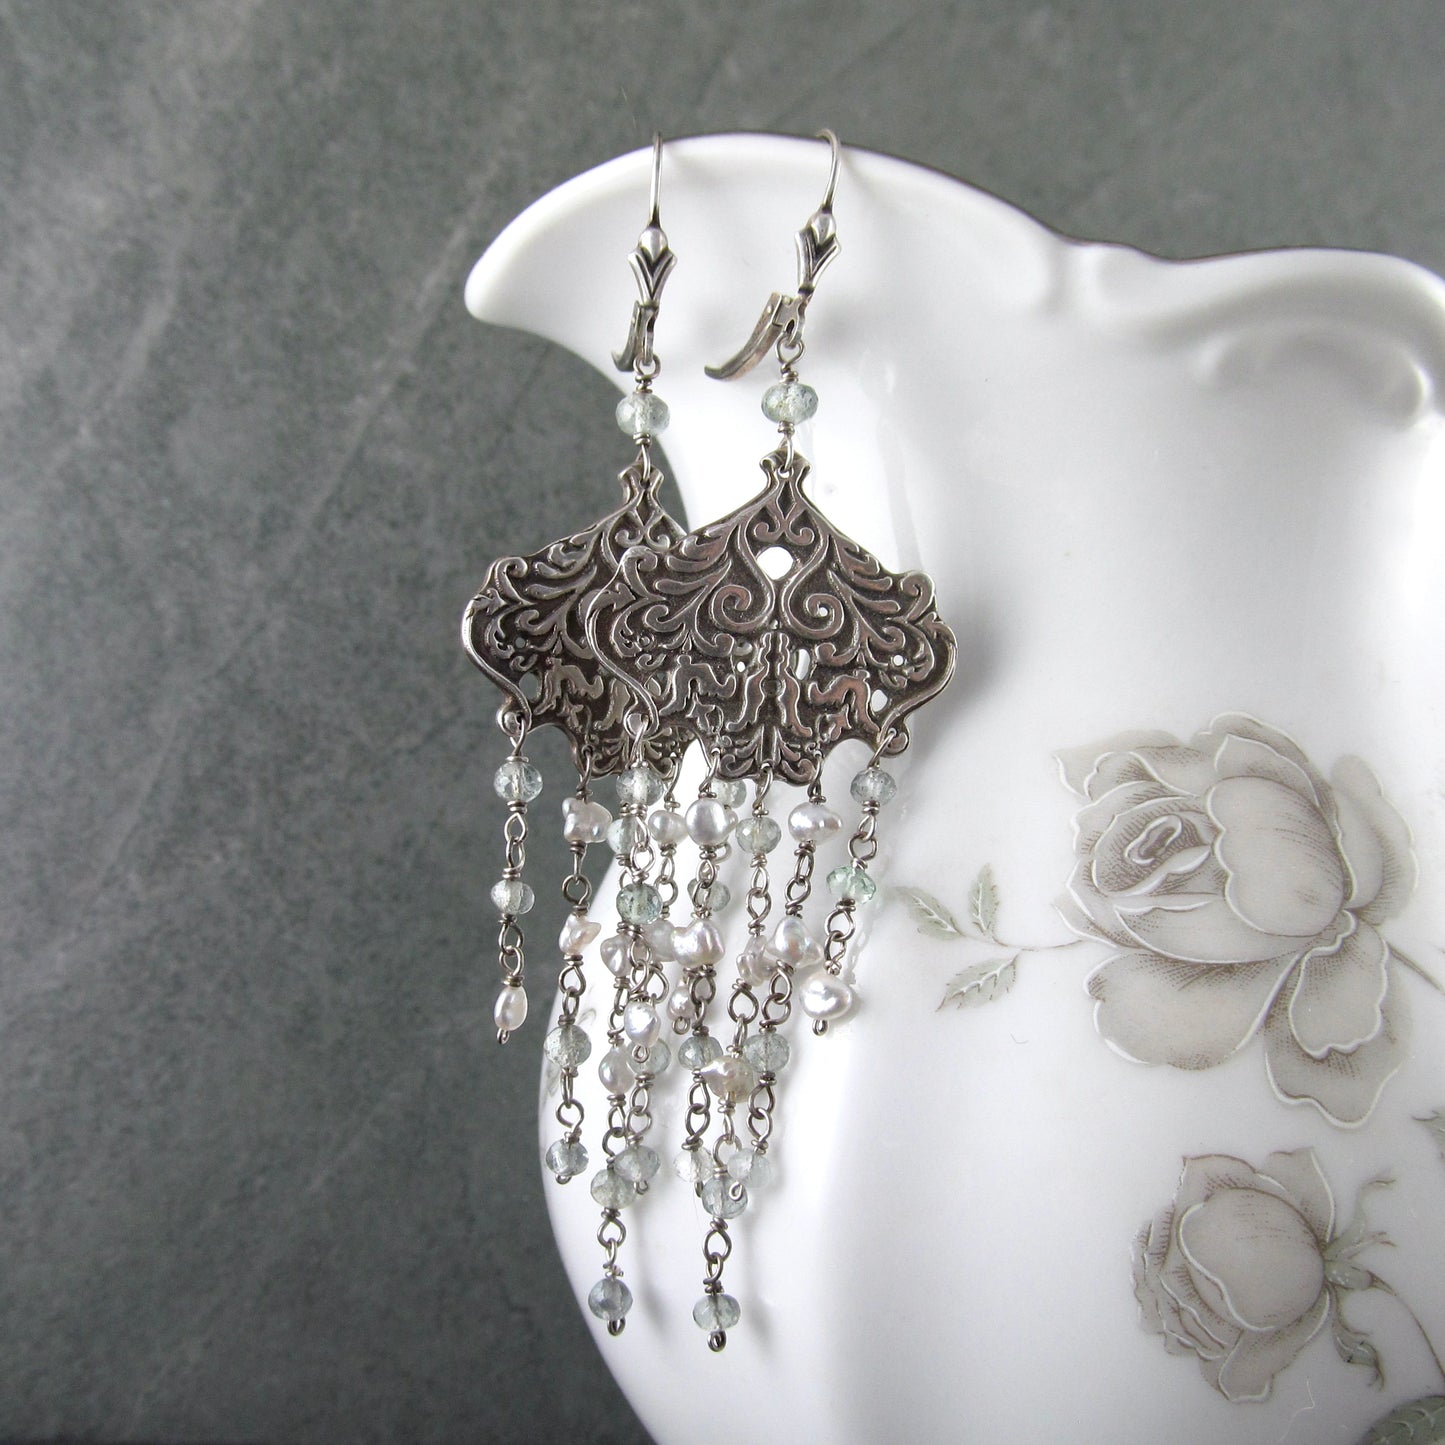 Aquamarine chandelier earrings with silver saltwater keshi pearls, handmade recycled sterling silver earrings-OOAK